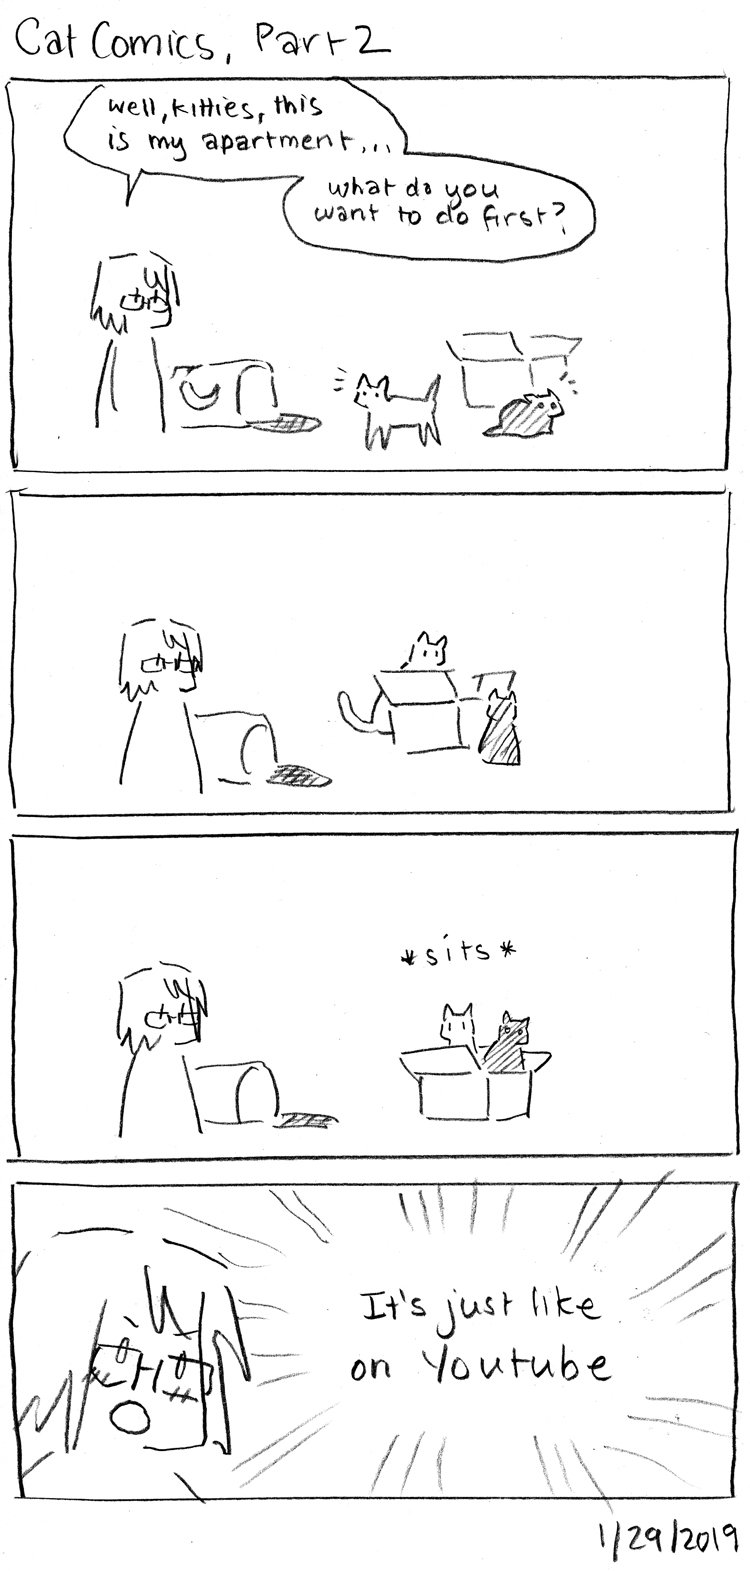 Cat Comics, Part 2